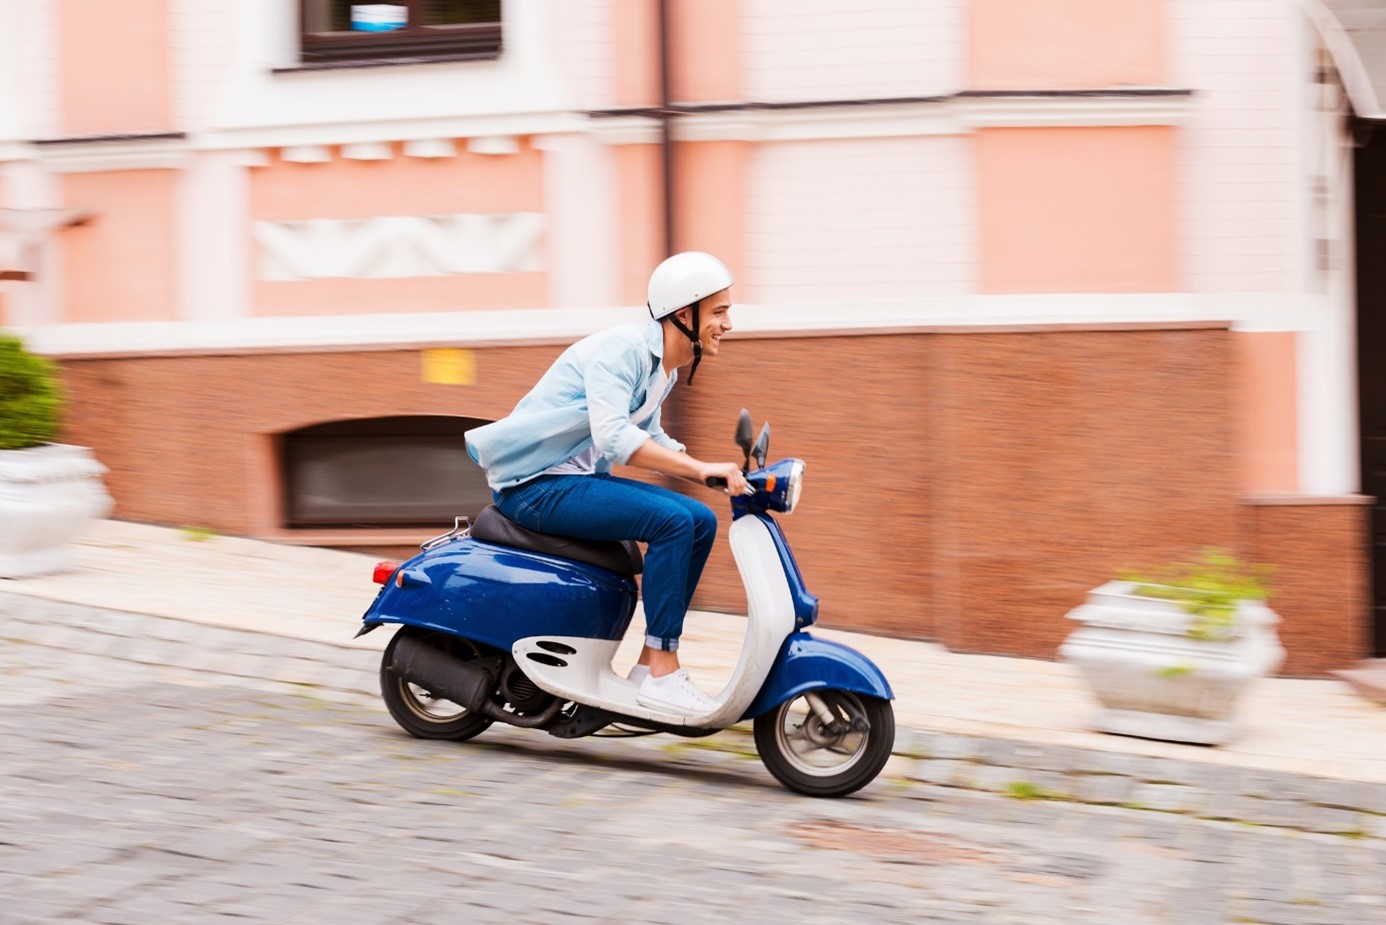 Quanto è utile una moto 50cc per muoversi in una città trafficata?